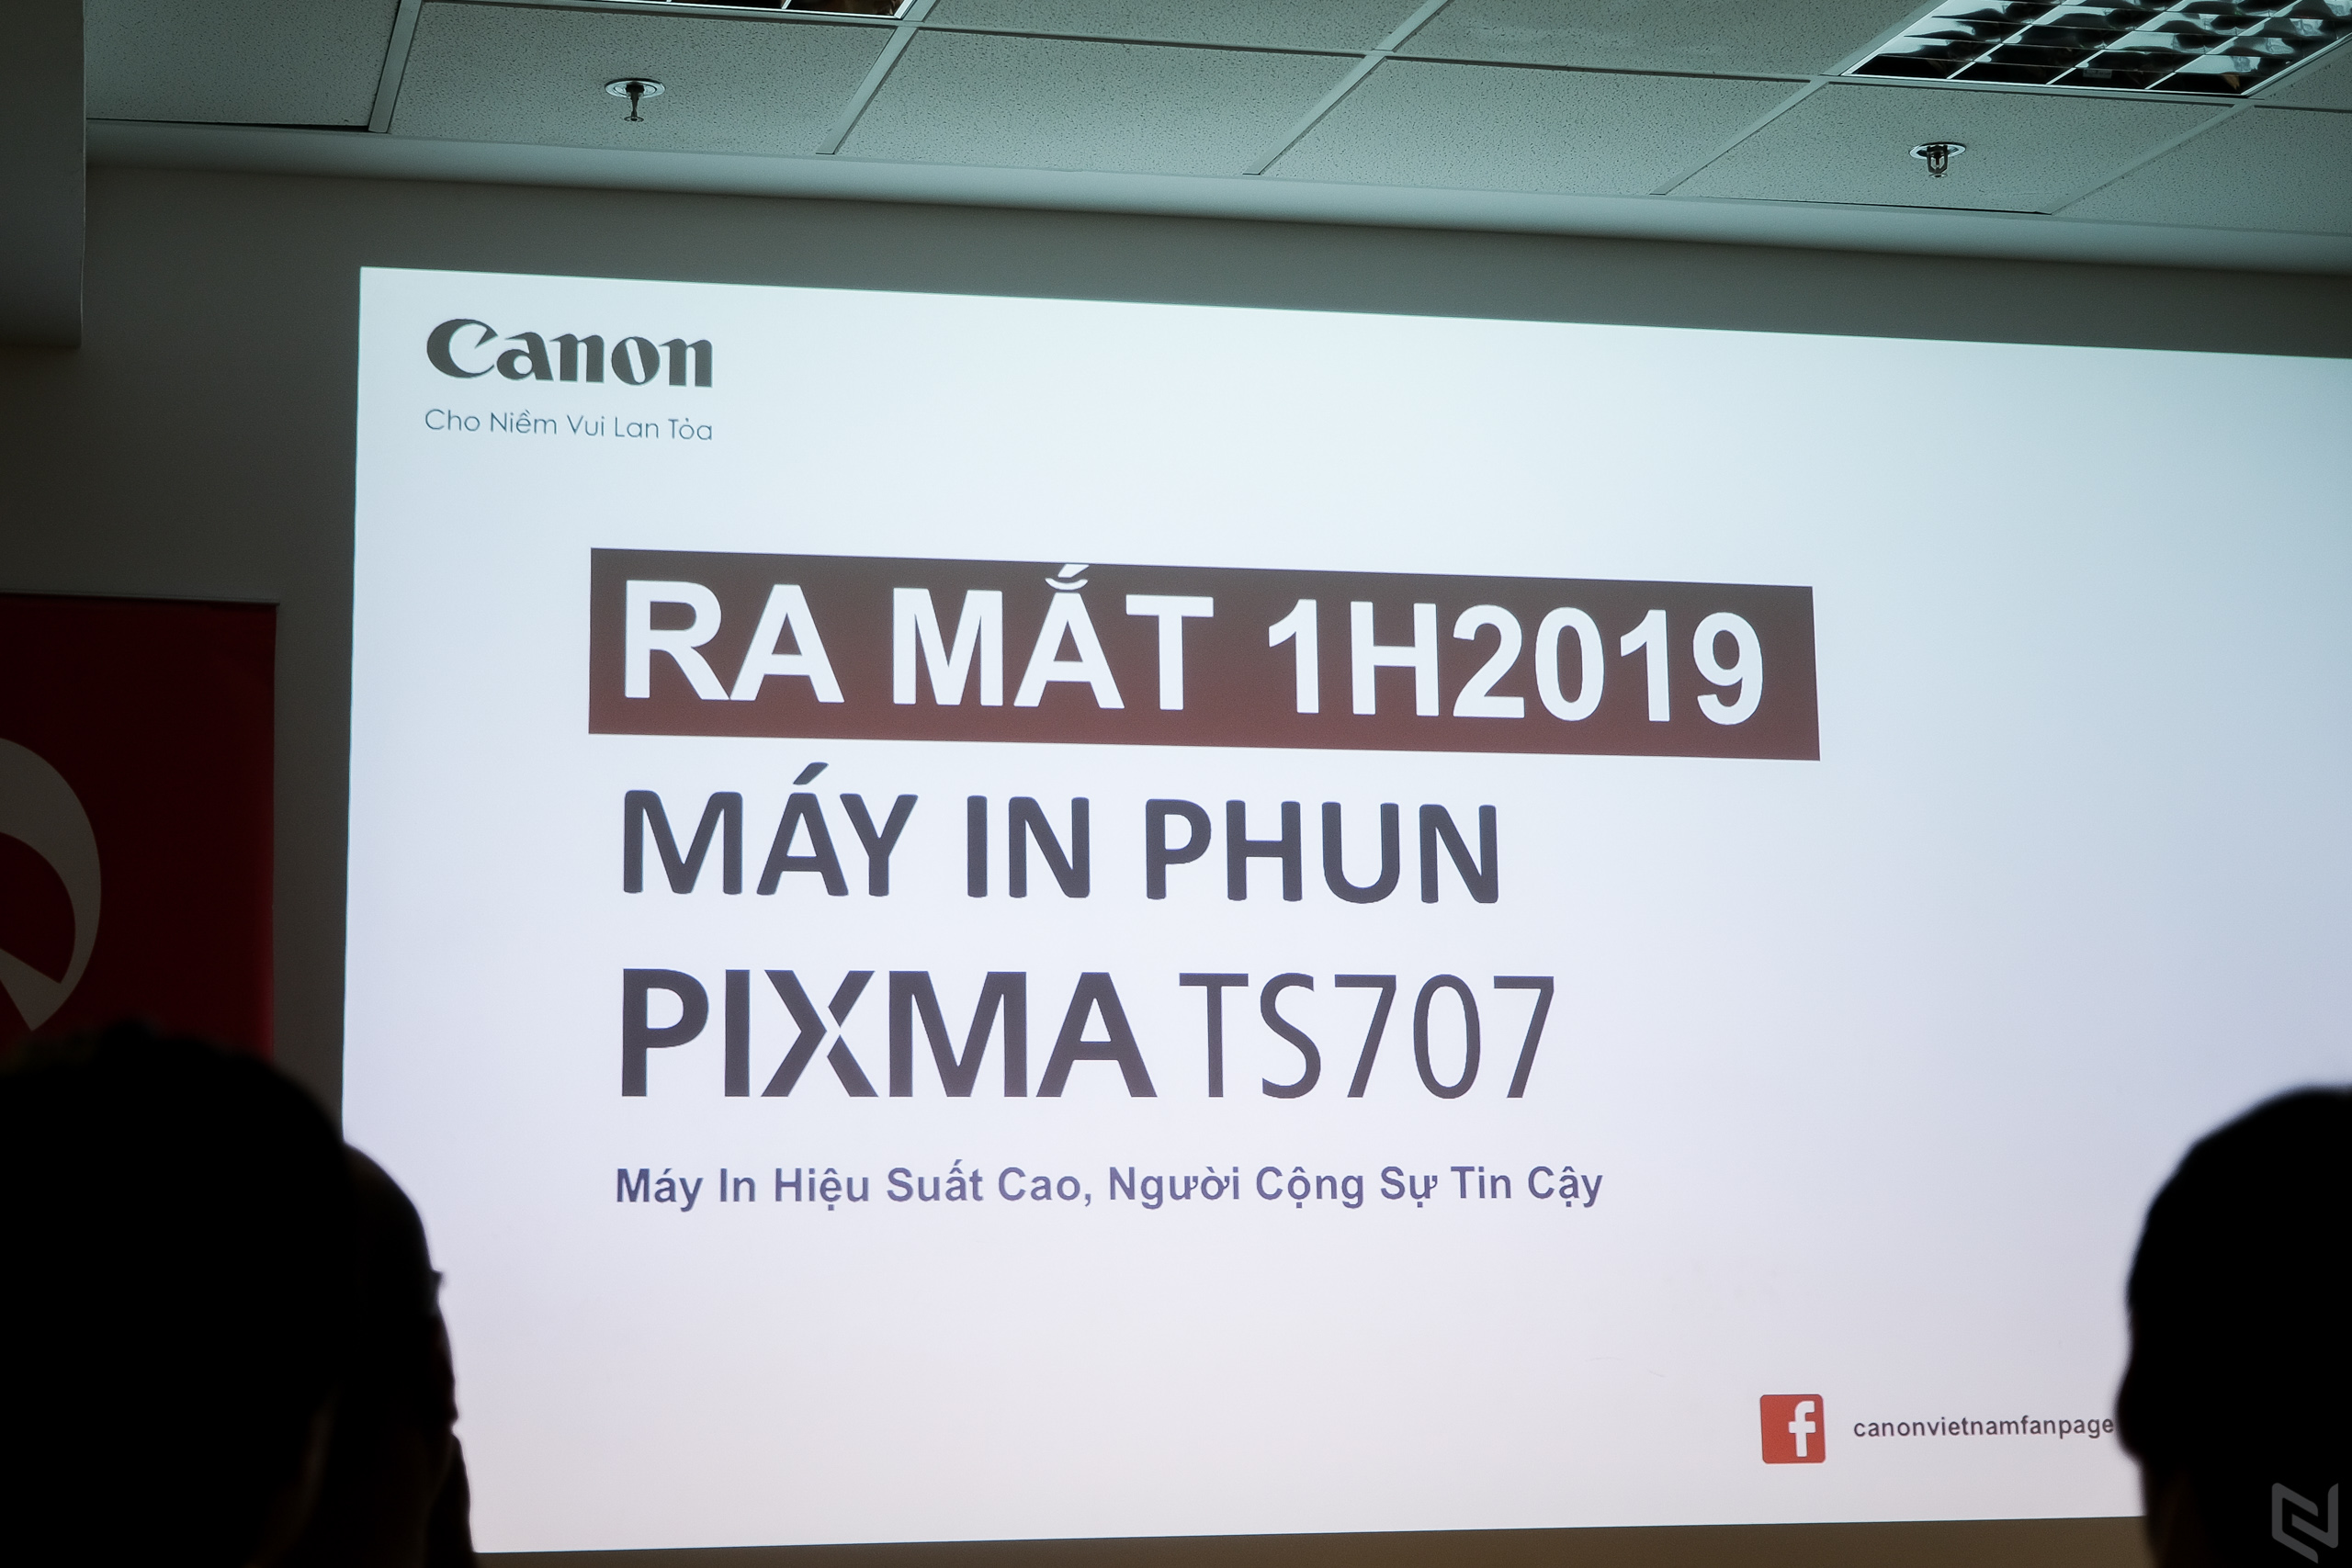 Canon ra mắt máy in mới PIXMA TS707, in văn bản hiệu suất cao, phù hợp với mô hình kinh doanh nhỏ và in ấn tại gia